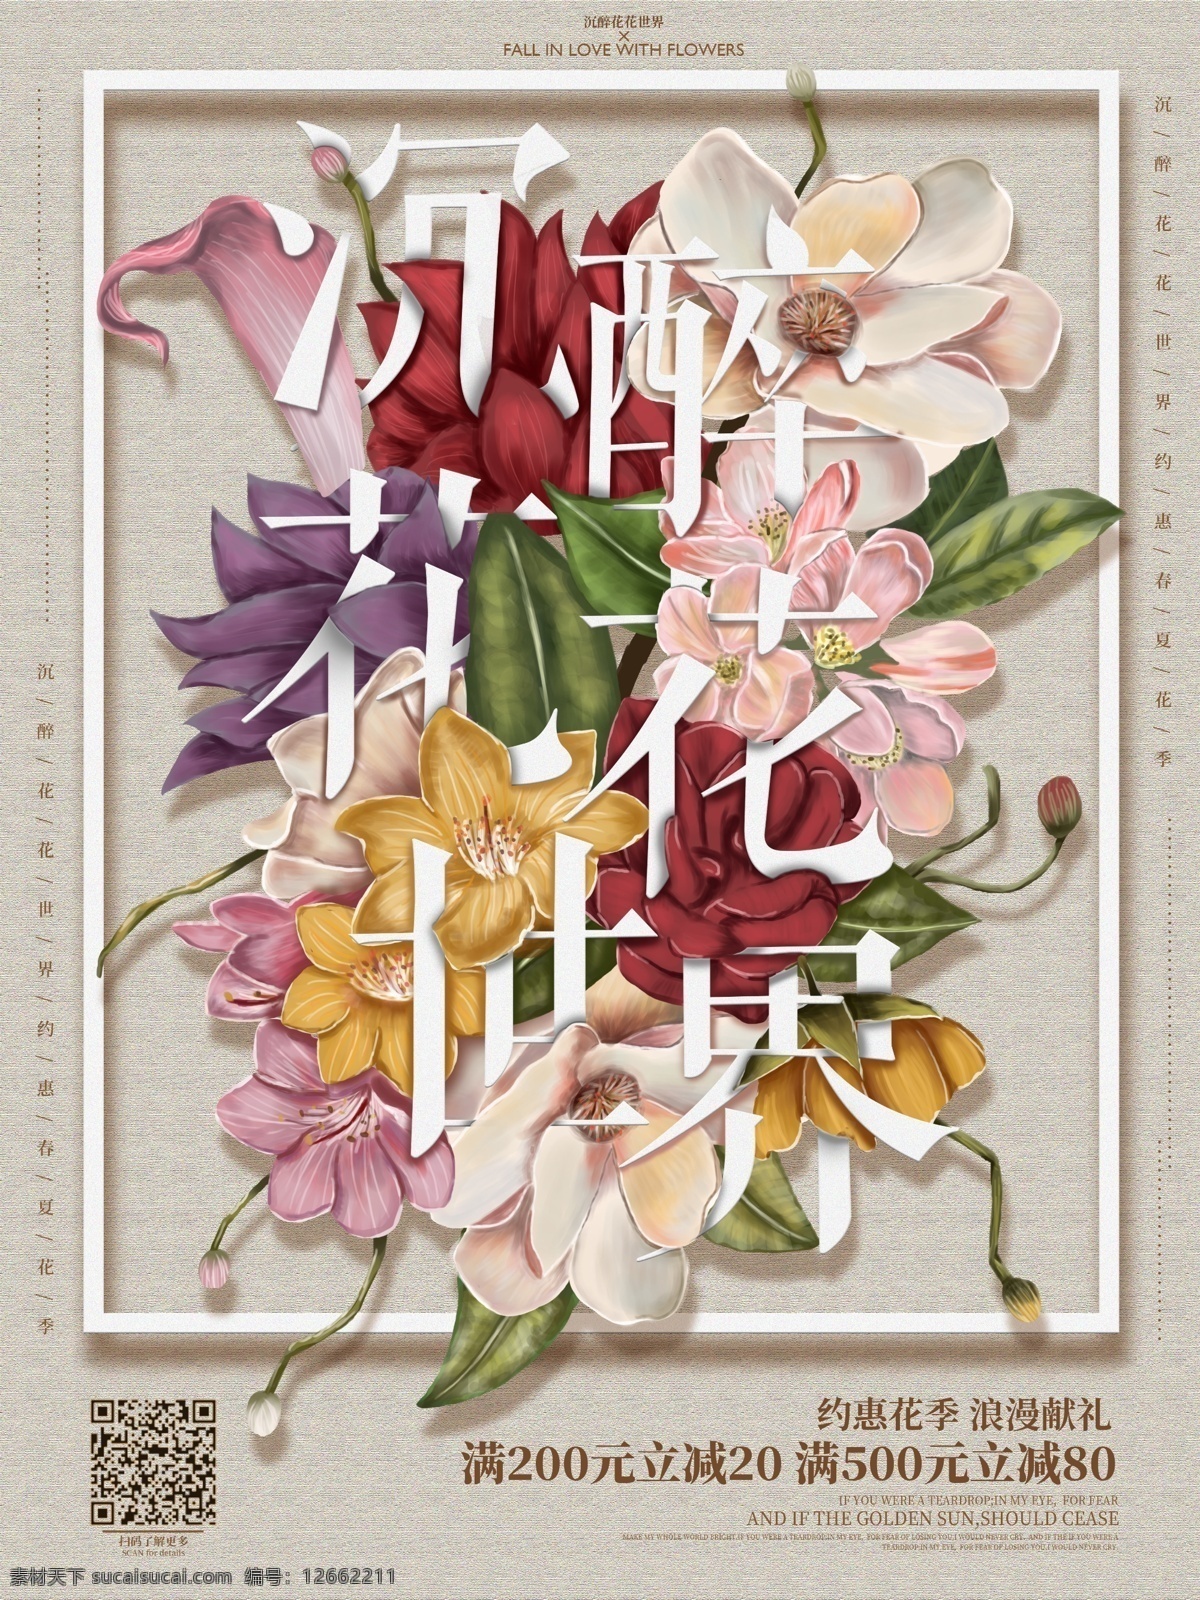 原创 手绘 花朵 字母 插画 促销 海报 花卉 植物 绿叶 捧花 复古 肌理感 立体感 文字 清新 宣传 活动